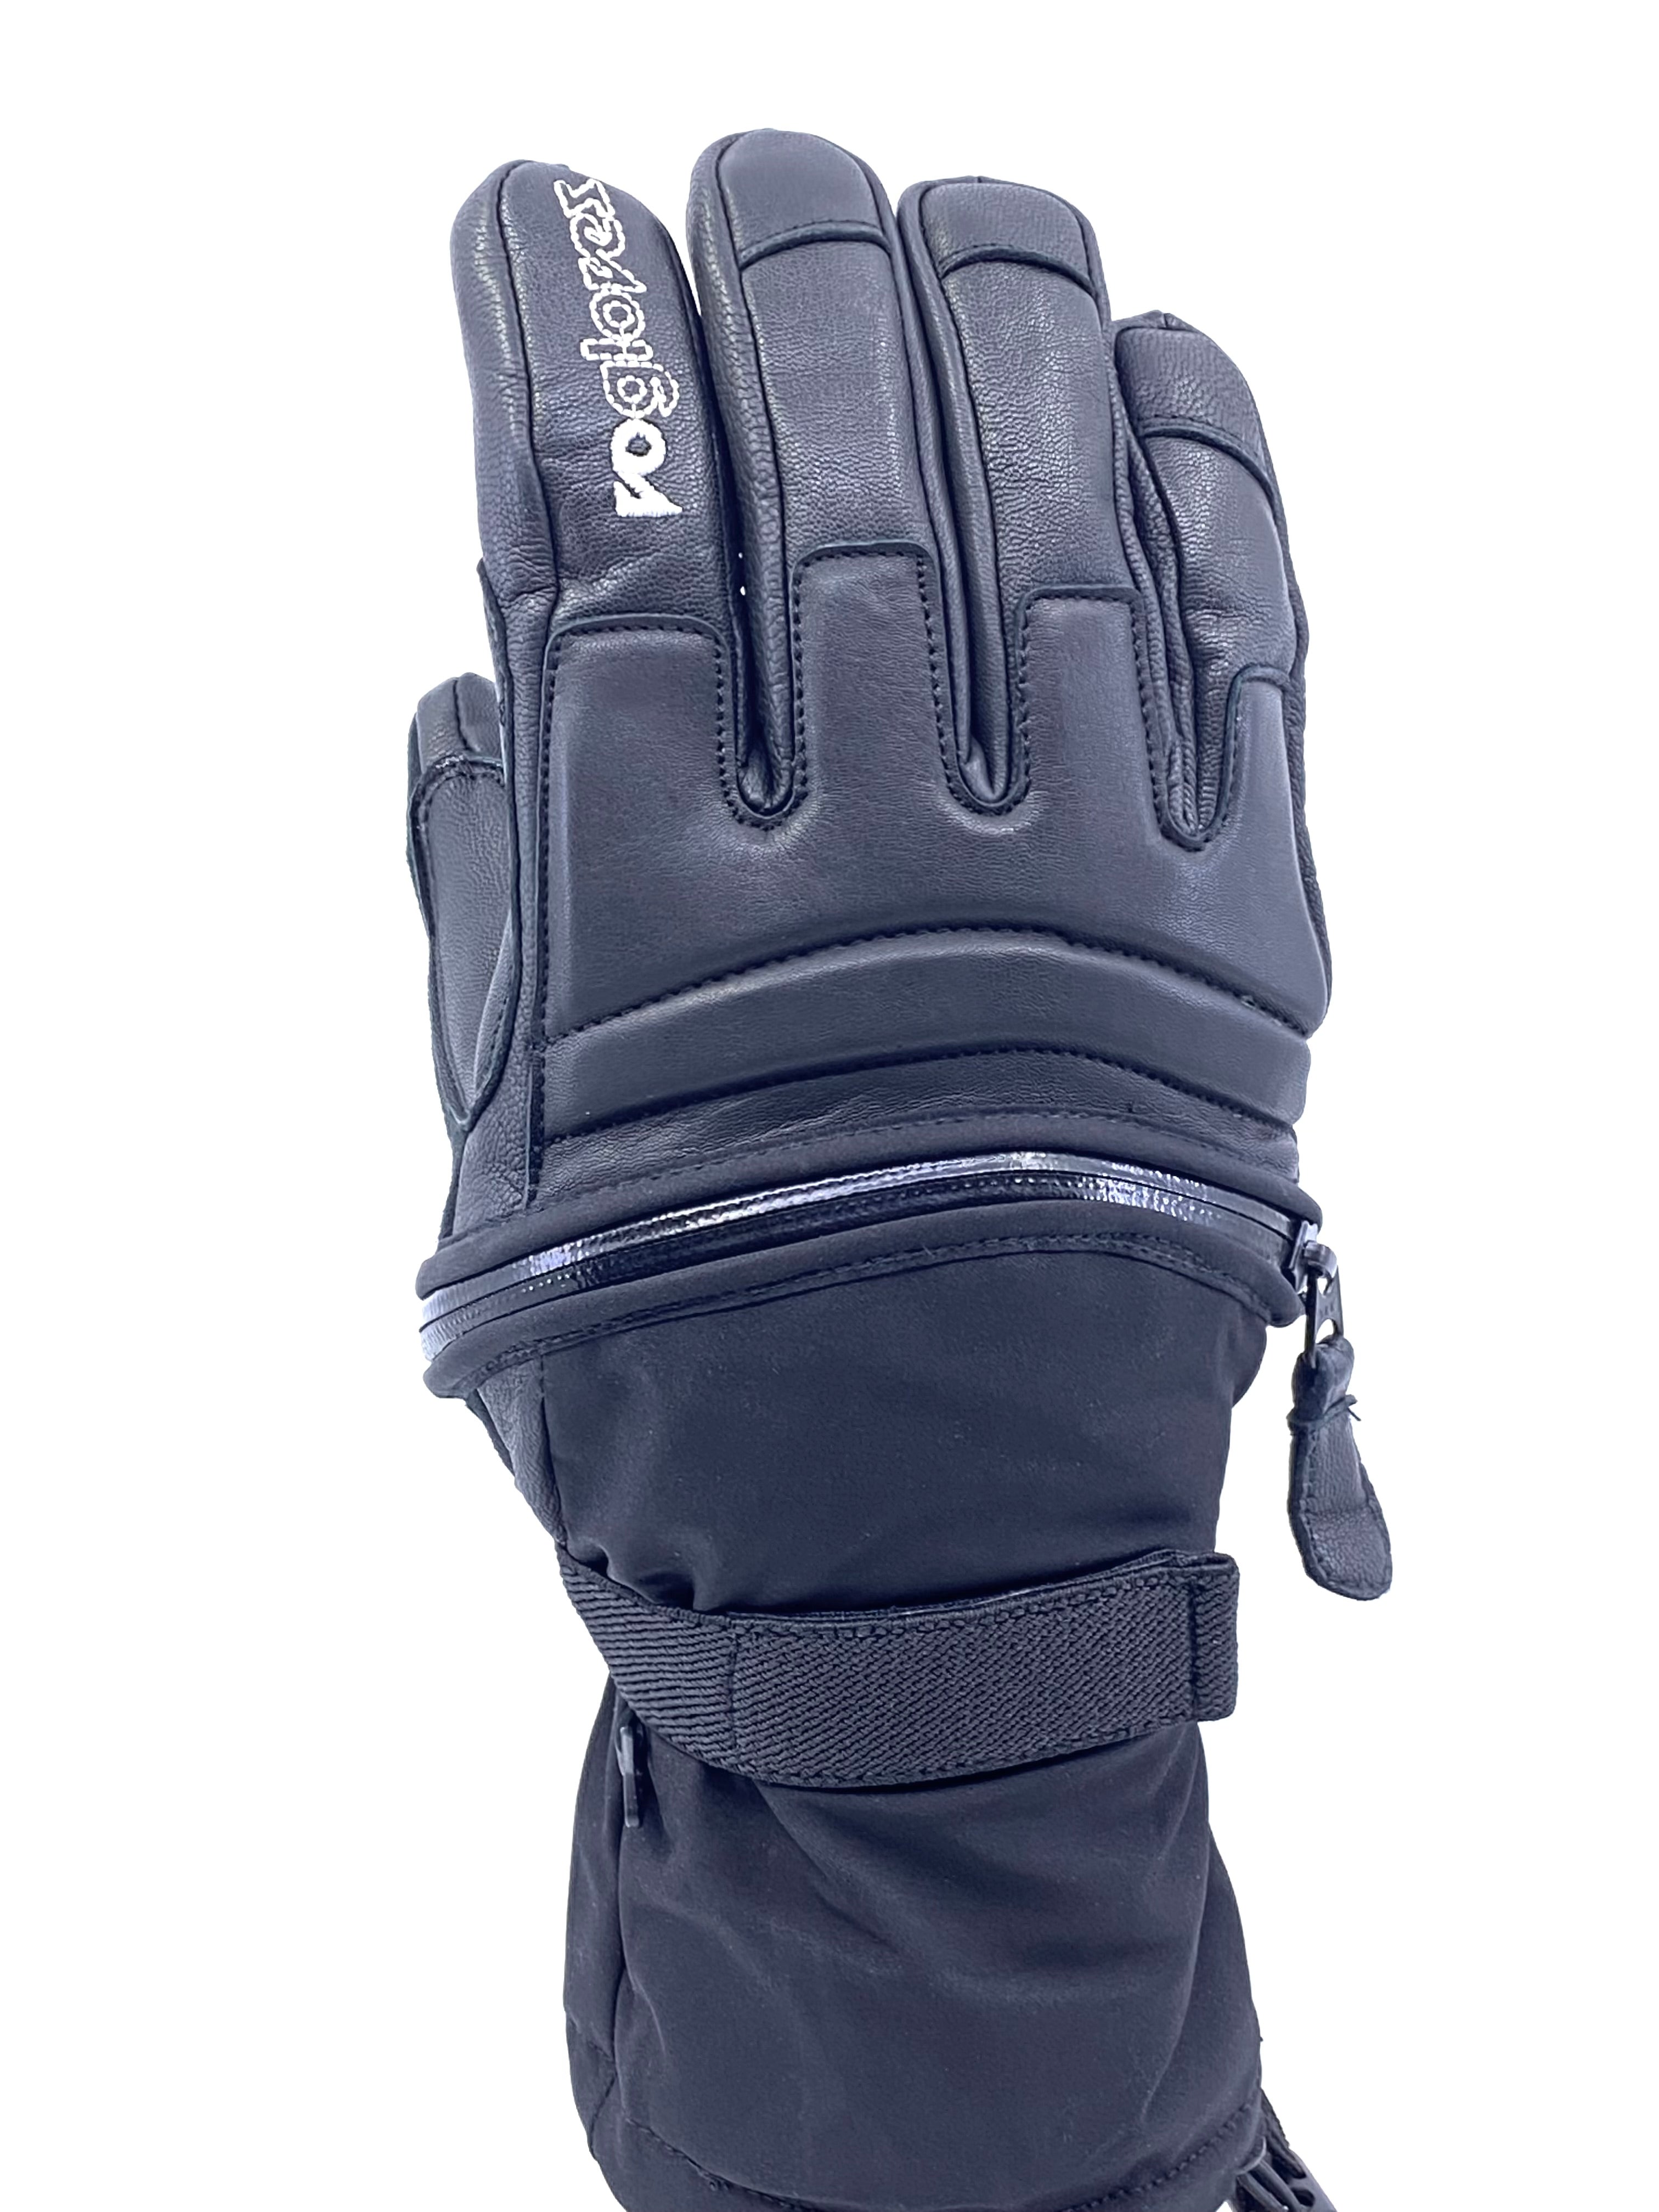 vo gloves | winter | snow | zipper gloves | sandy | vogloves – VO 